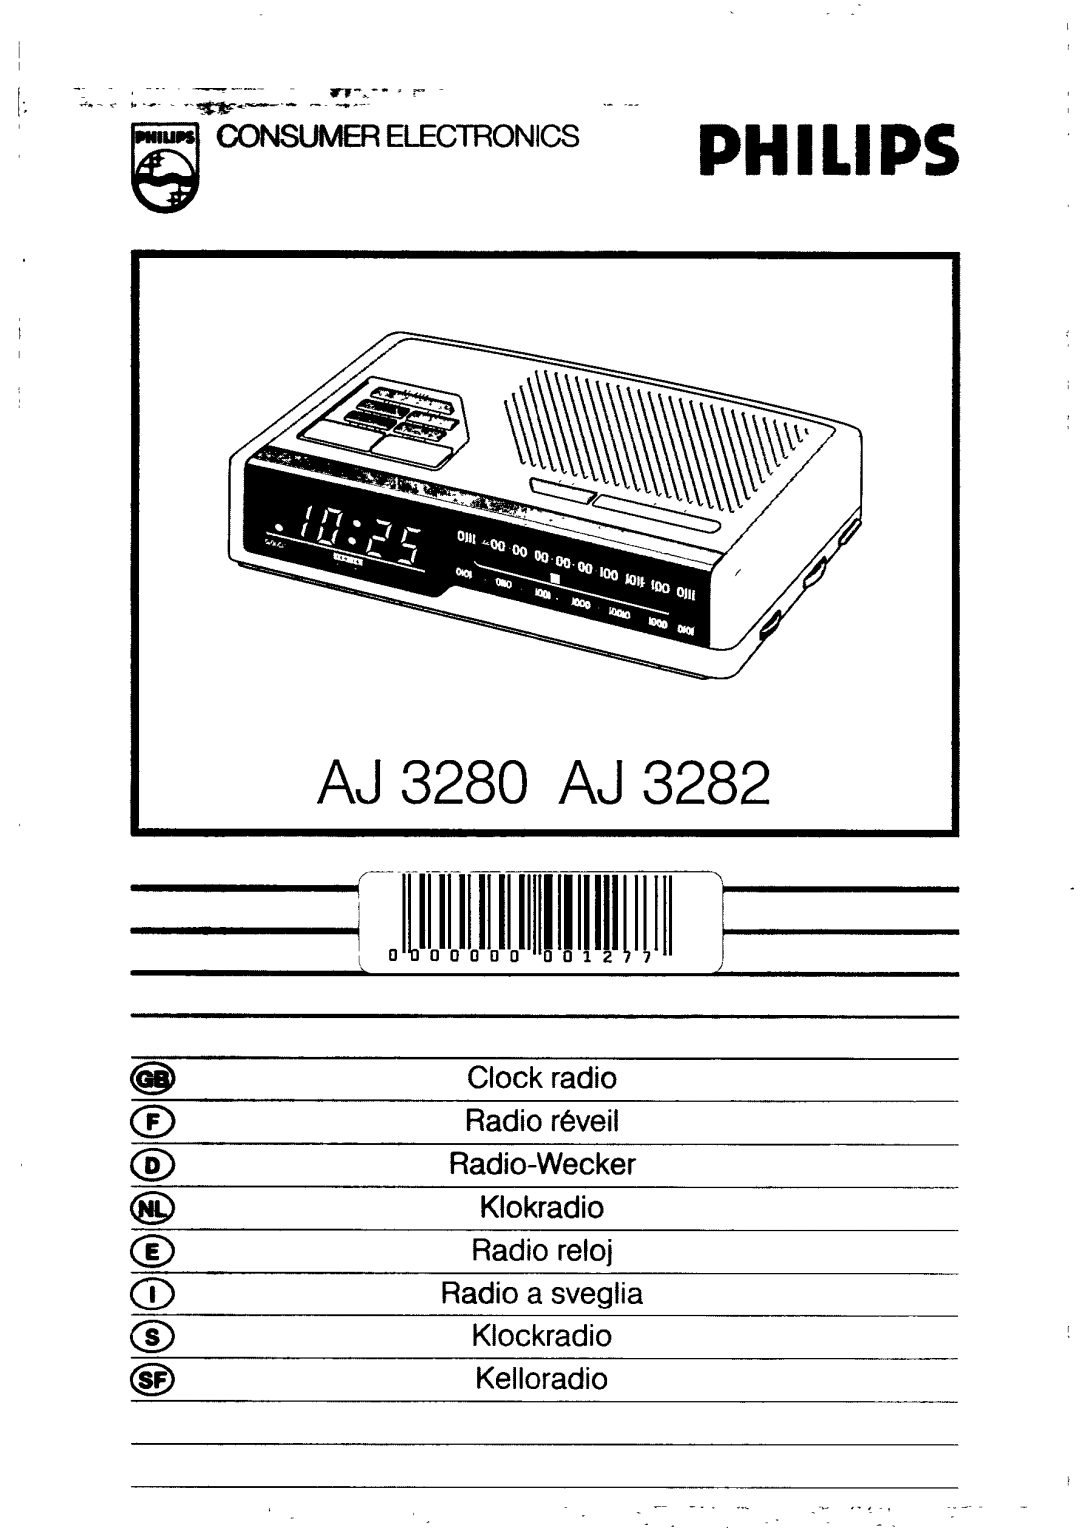 Philips AJ3280 manual Clock Radio, Dual Alarm, Repeat Alarm, Switches off the alarm for 9 minutes, Alarm Reset 